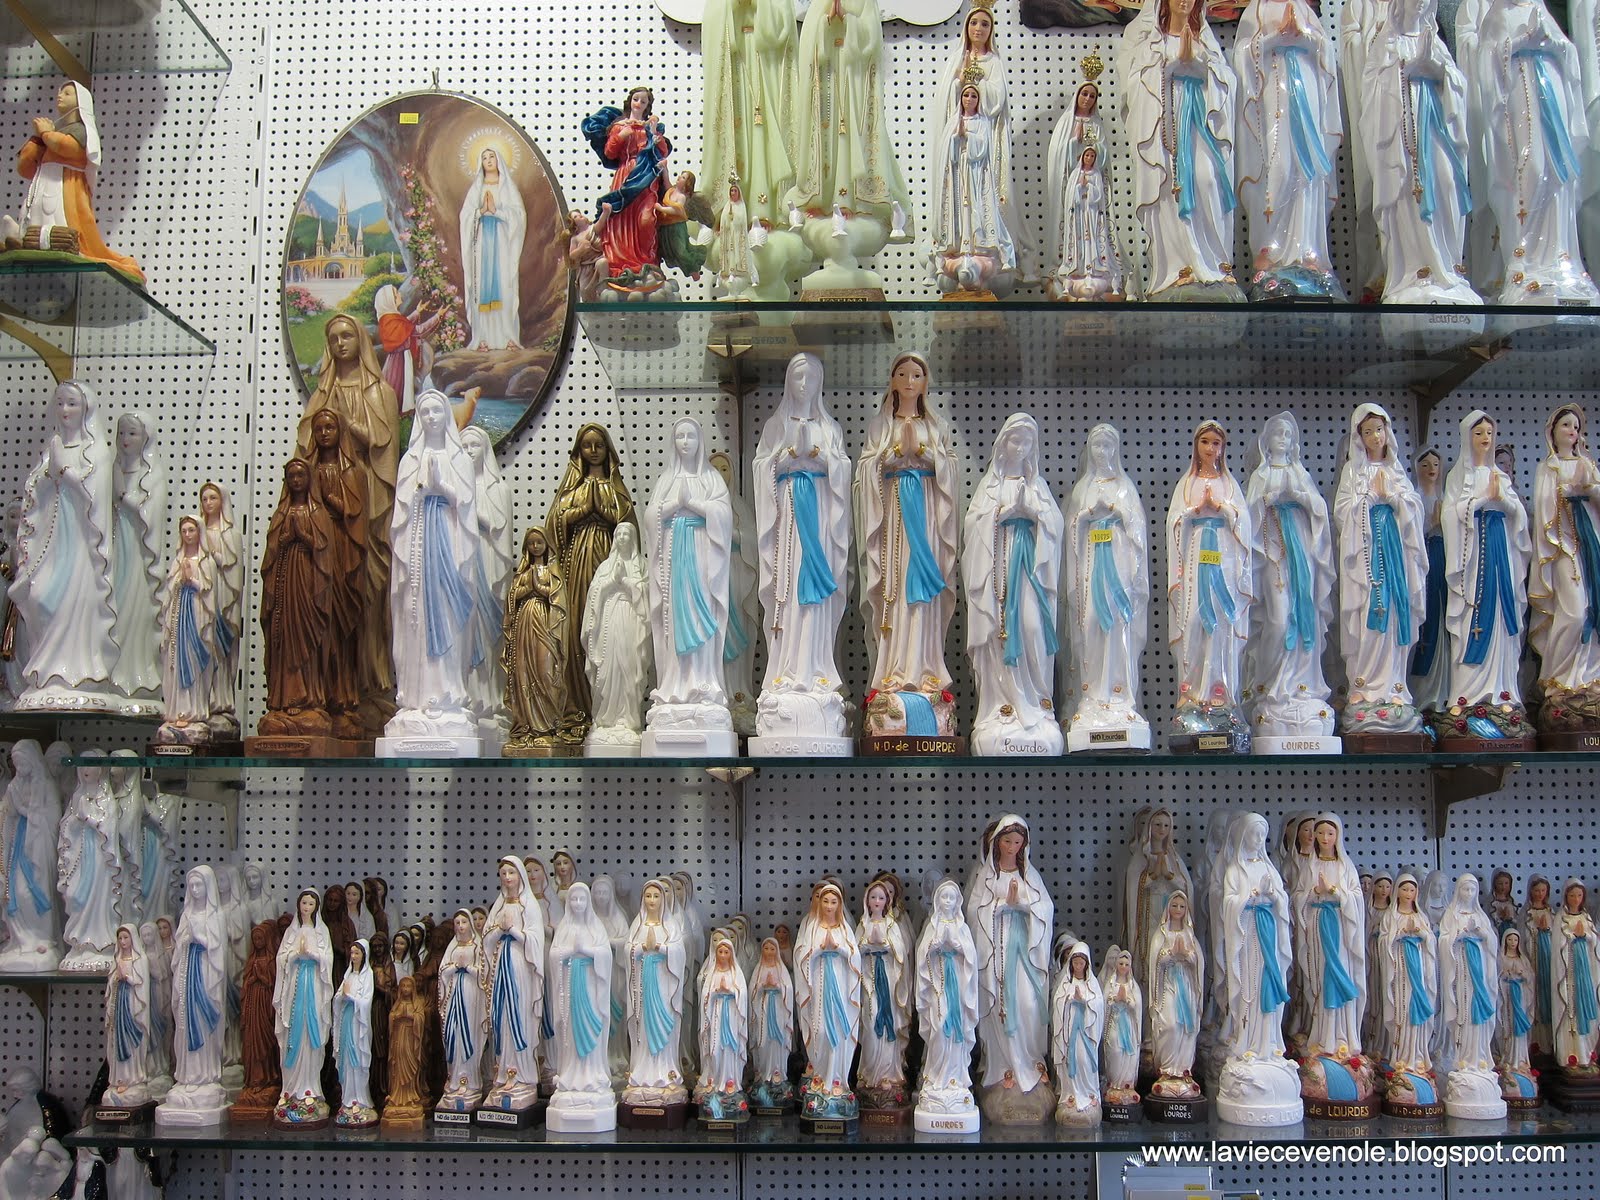 La Vie Cevenole/Leven in Amsterdam.: On n'est pas à Lourdes ici.